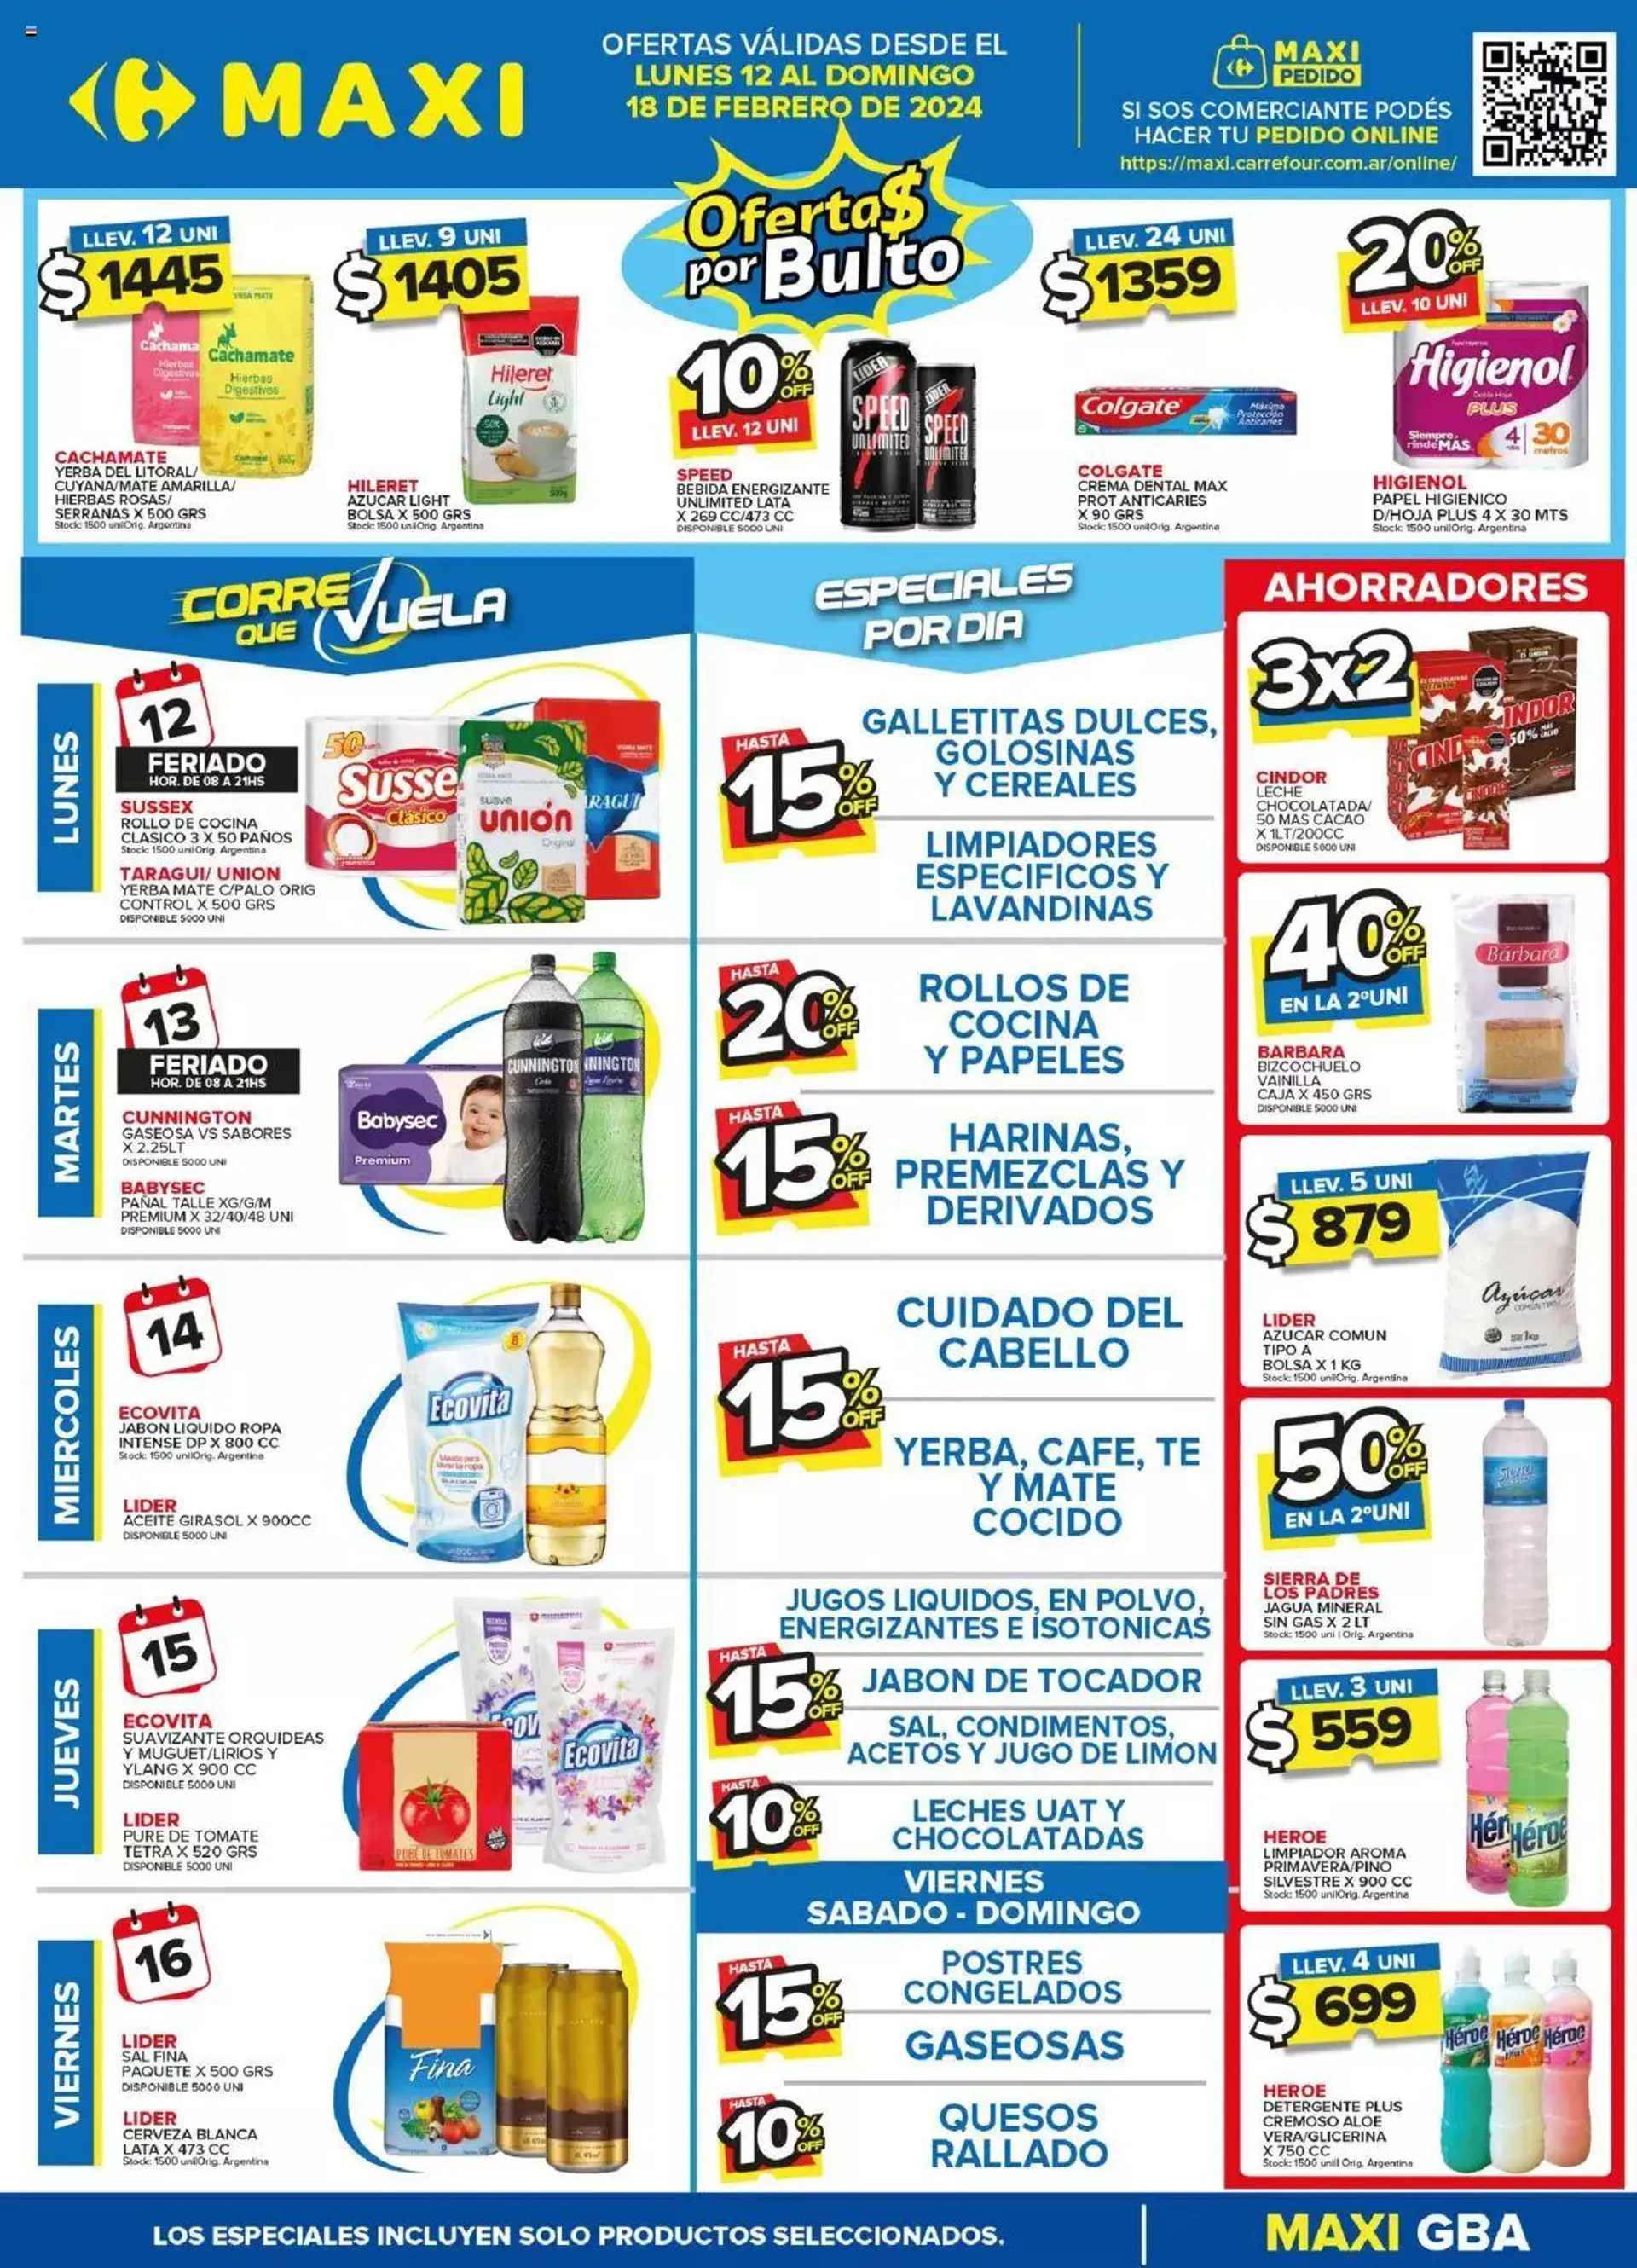 Ofertas de Carrefour Maxi catálogo 12 de febrero al 18 de febrero 2024 - Página  del catálogo